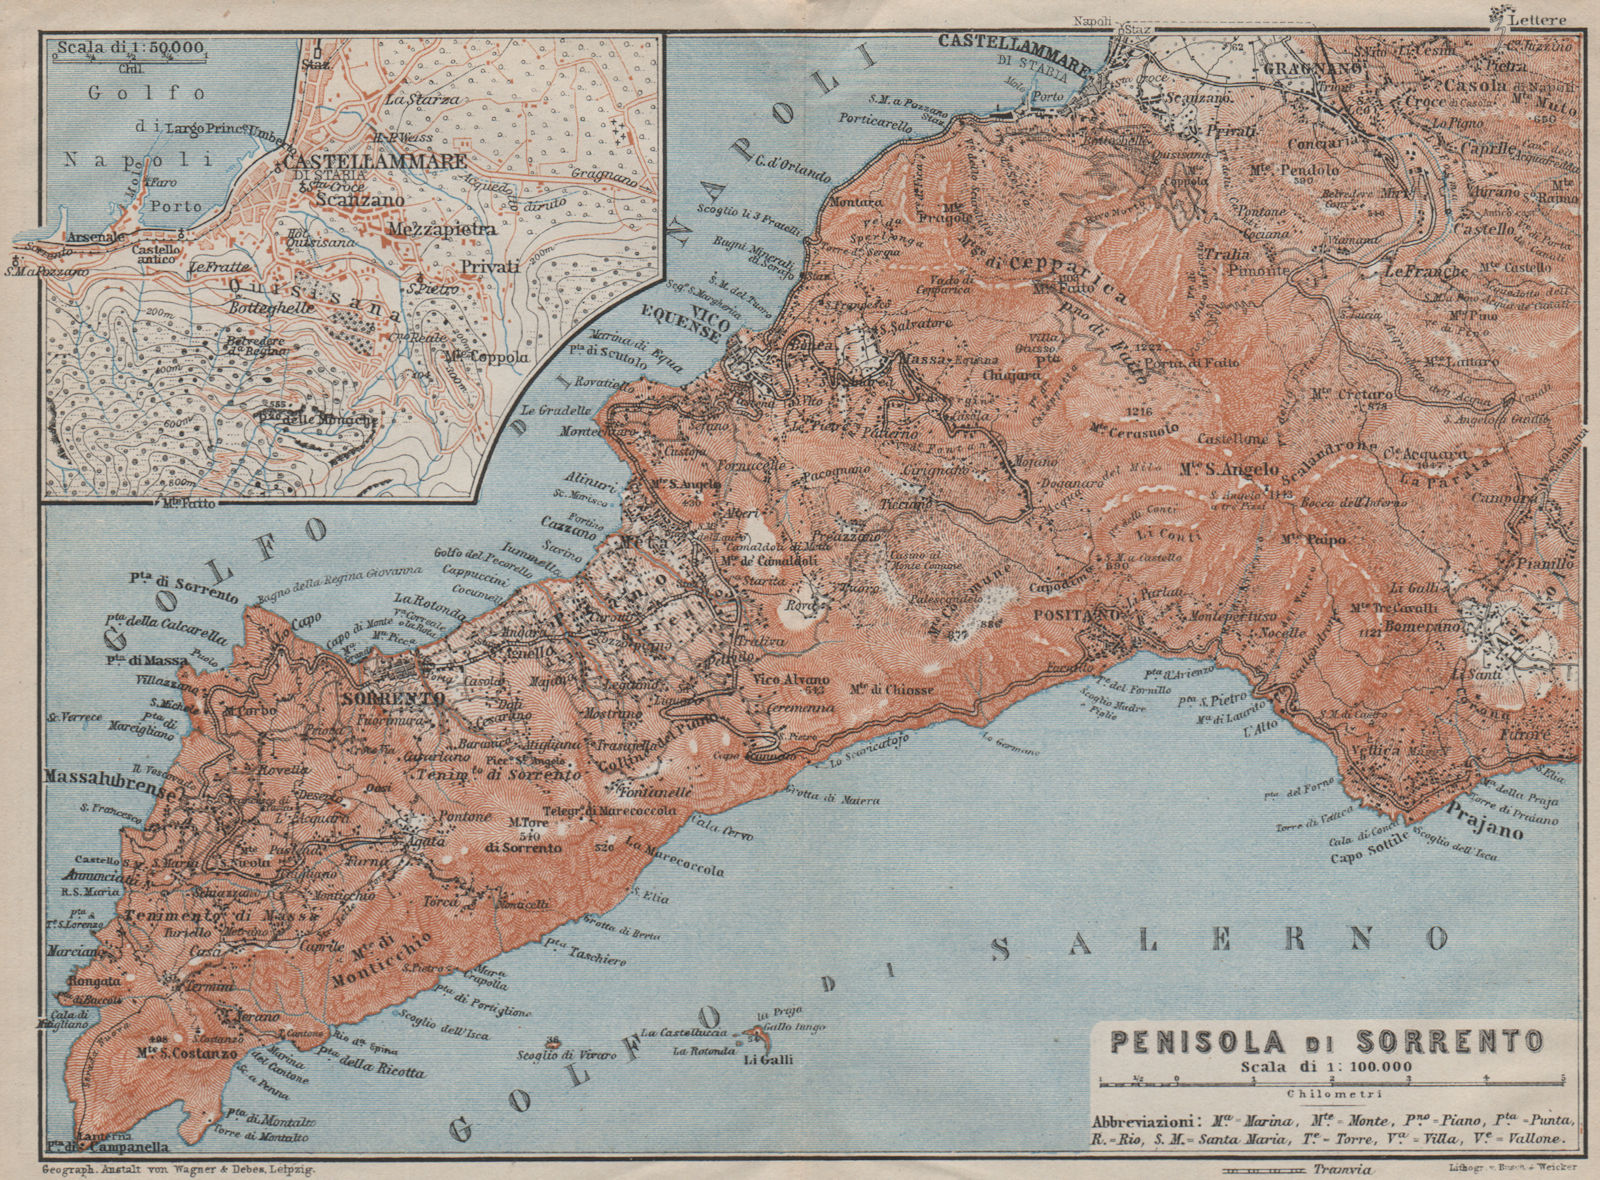 Penisola SORRENTO Peninsula. Castellammare di Stabia Positano Praiano 1909 map